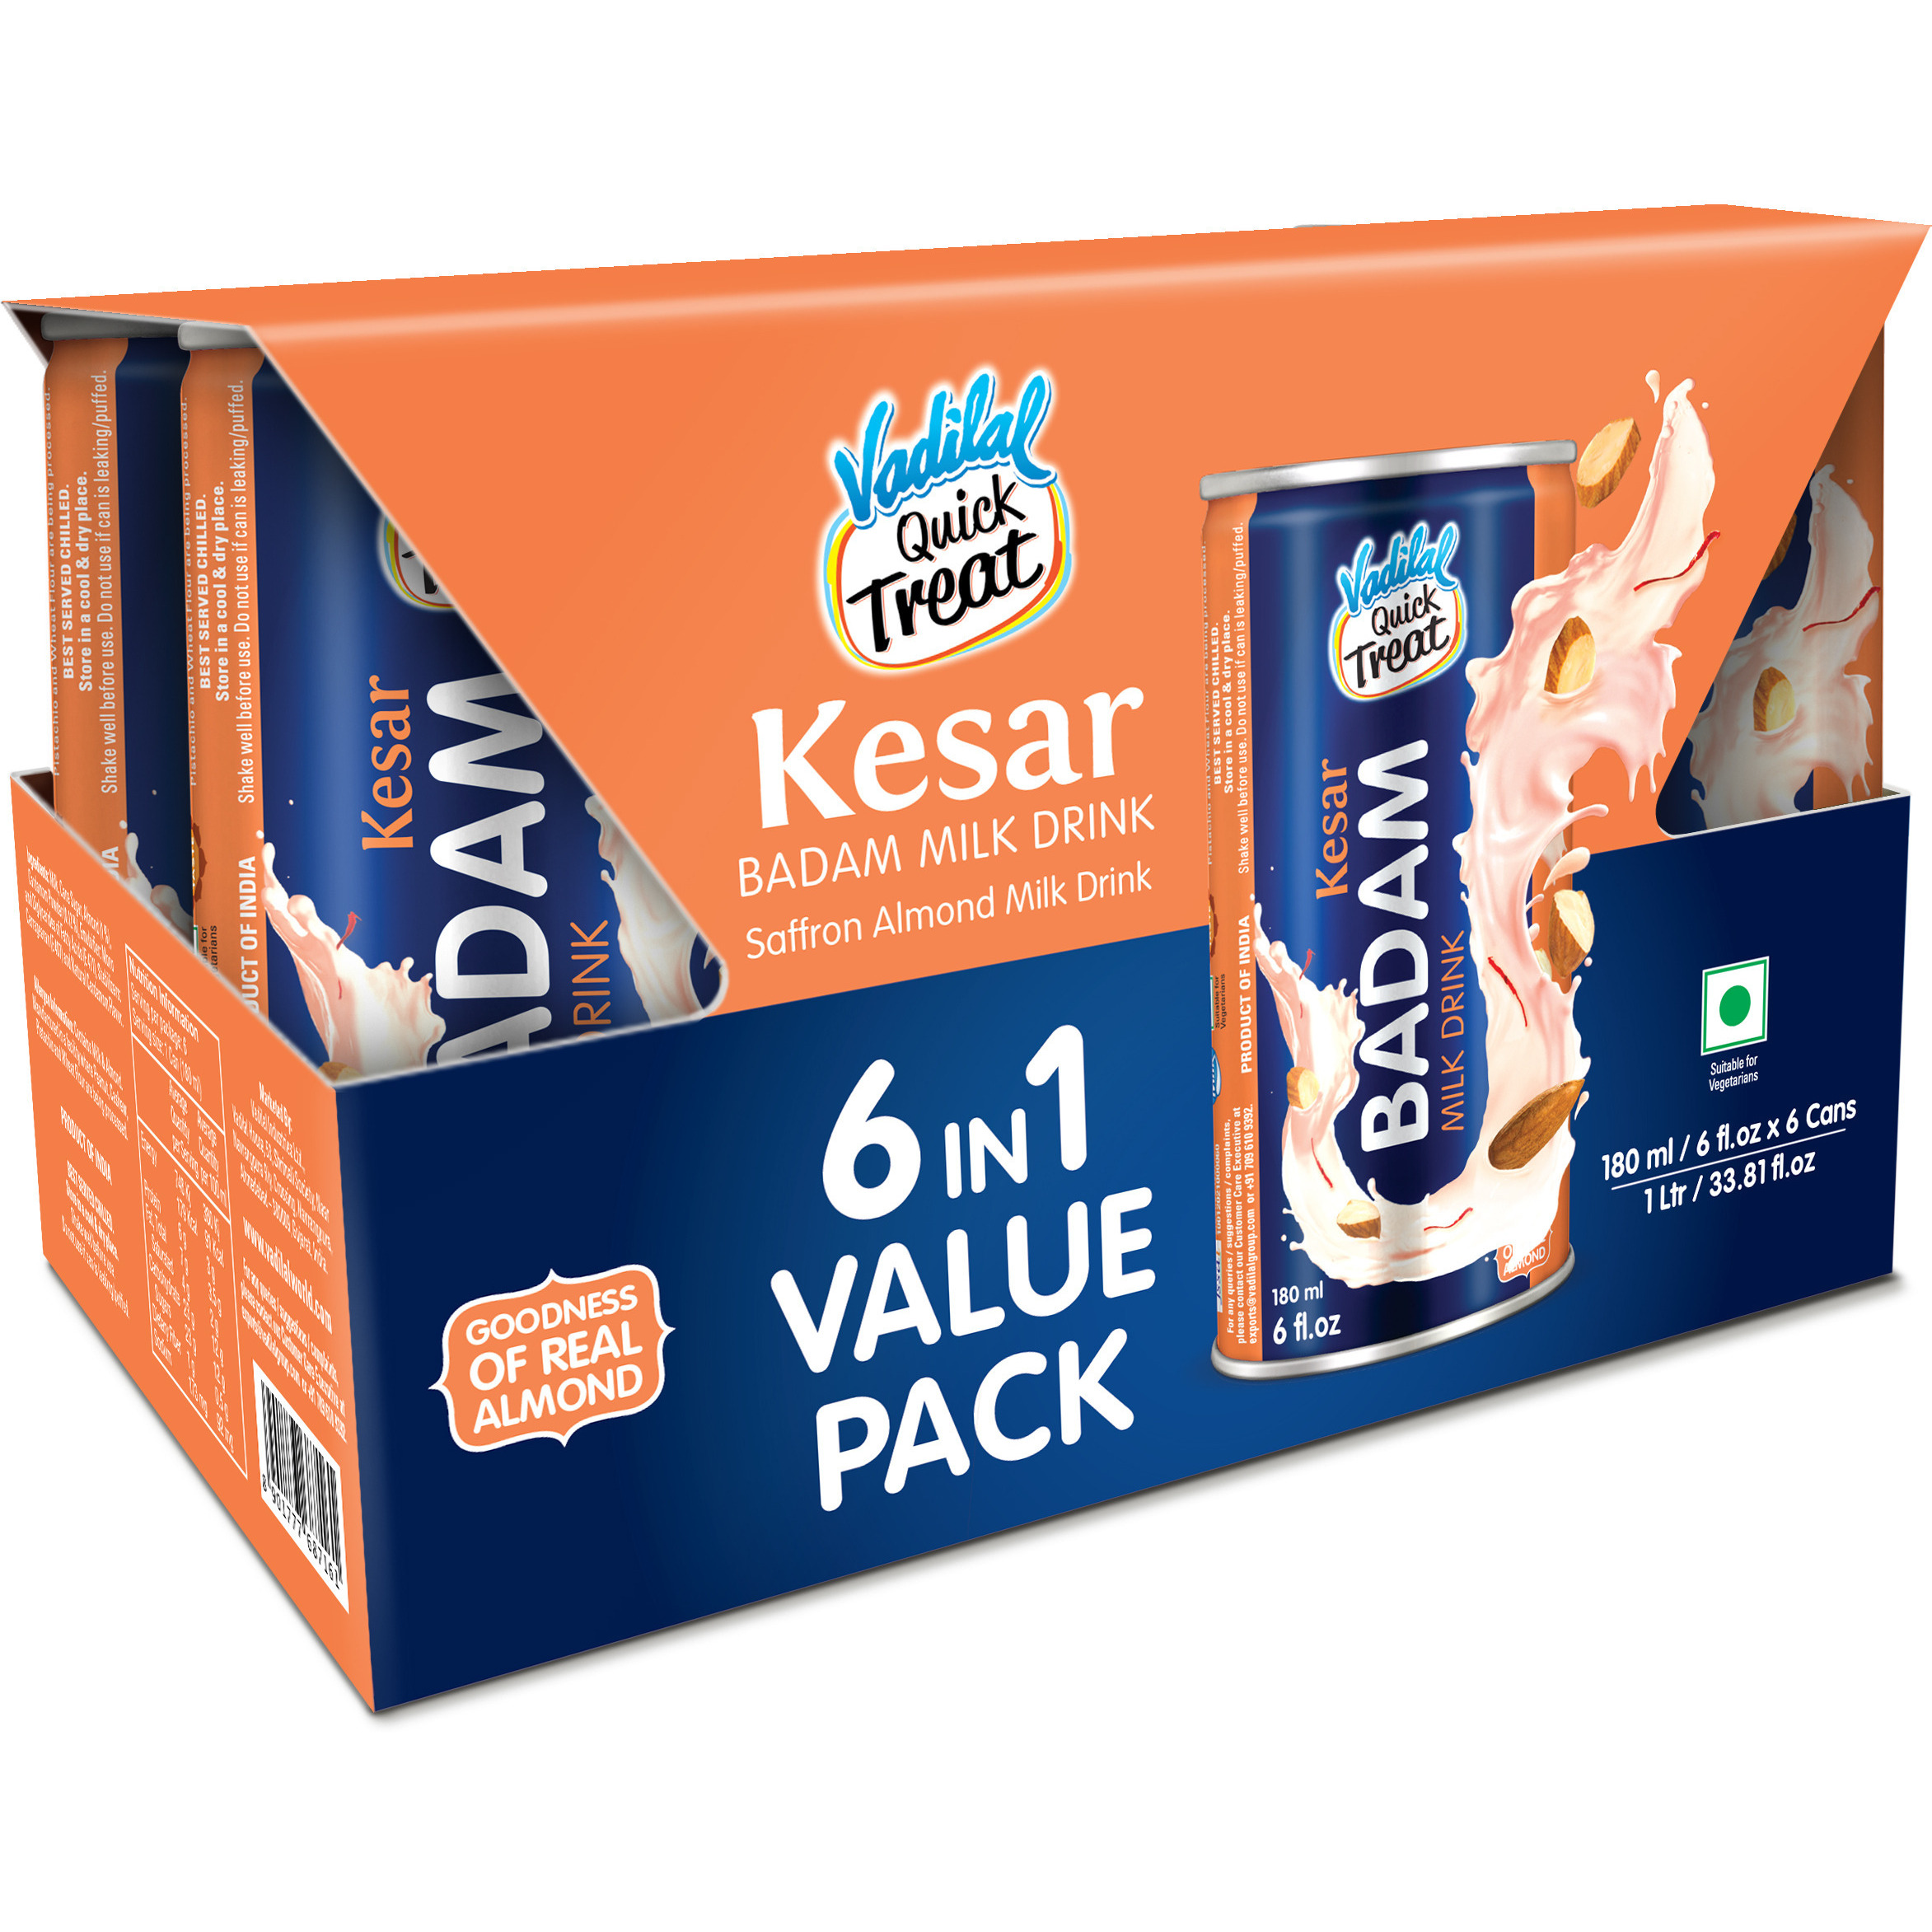 Pack of 3 - Vadilal Kesar Badam Milk Drink 6 In 1 Value Pack - 180 Ml (6 Fl Oz)